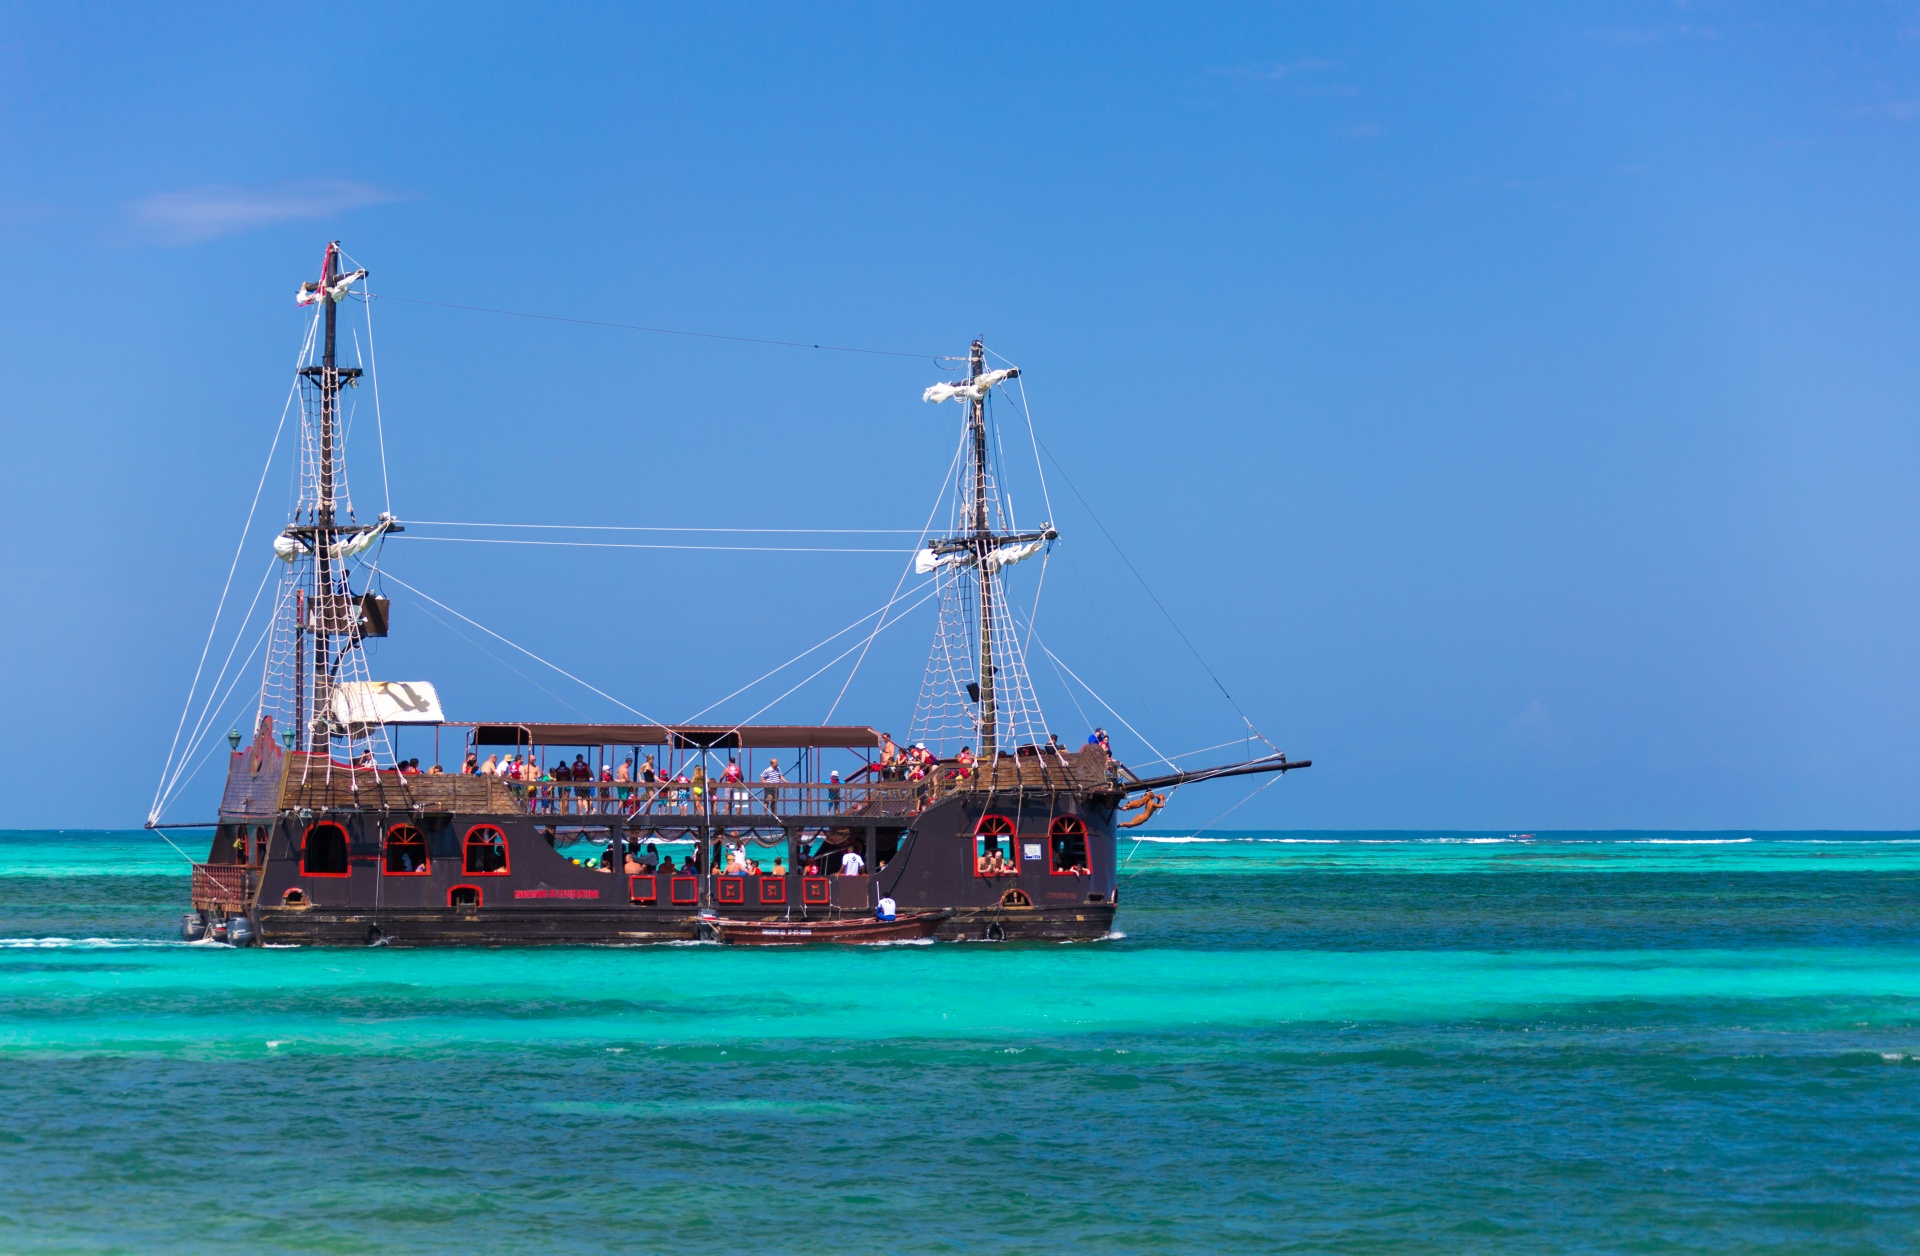 Piratenschip in het Caribisch gebied